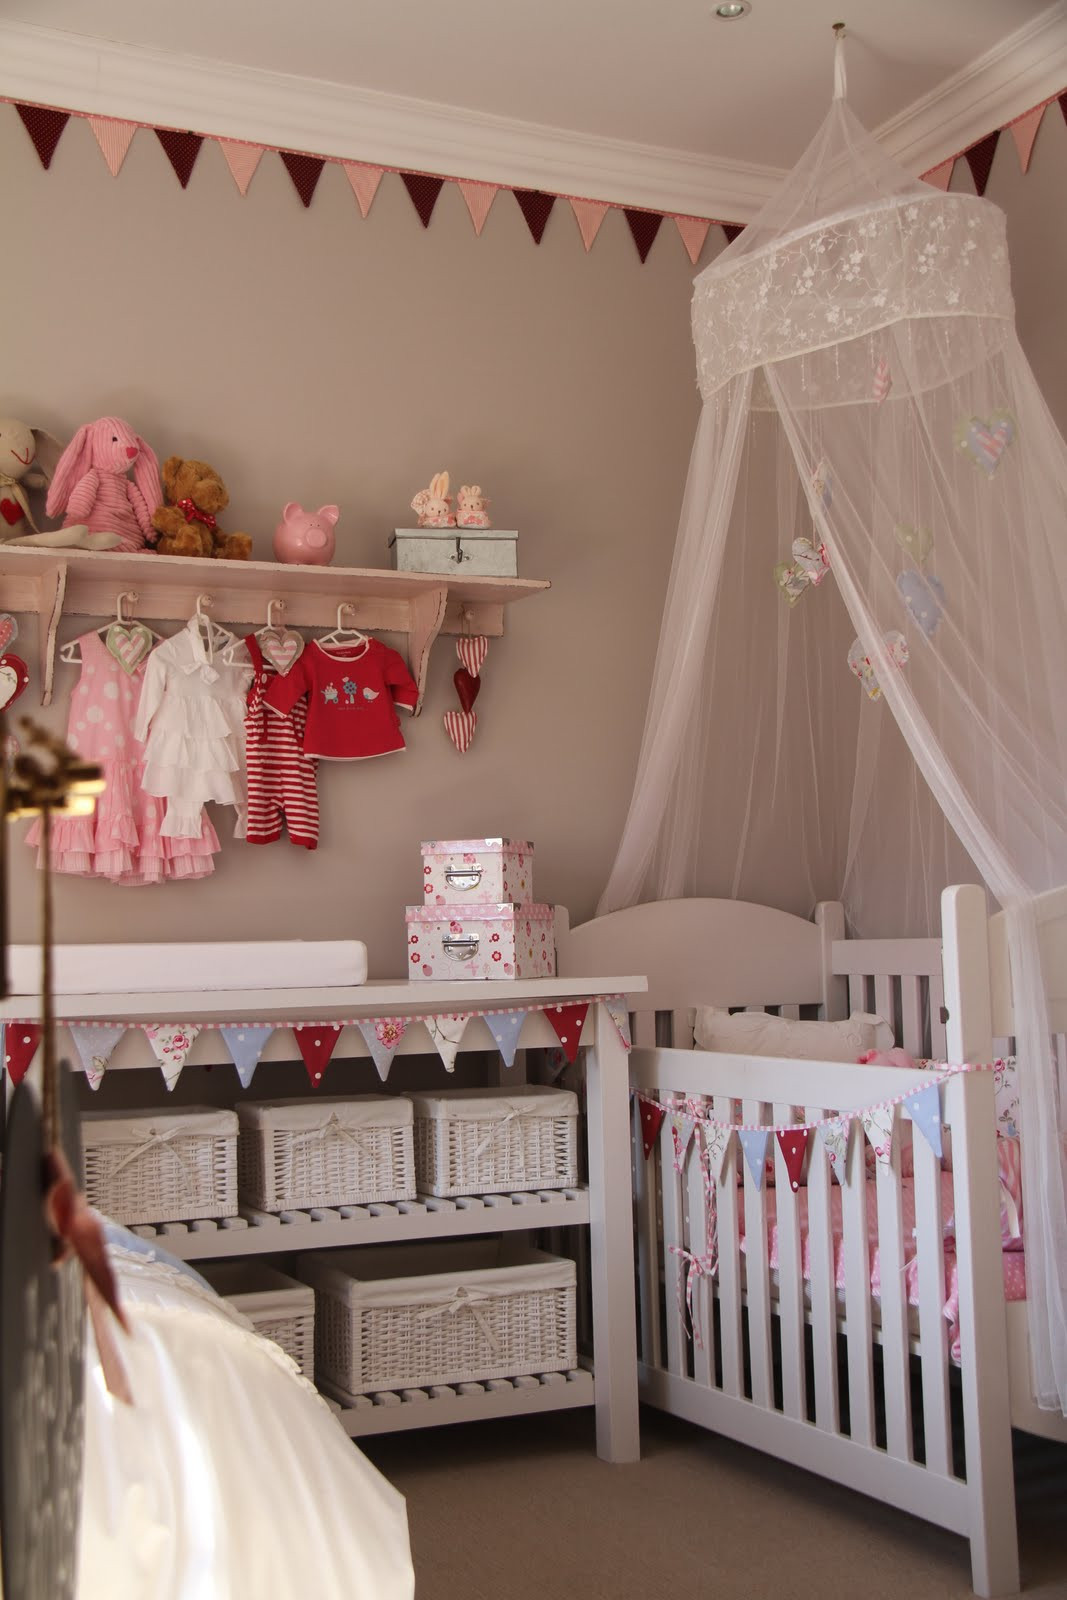 DIY Baby Nursery
 I SPY PRETTY Our Baby Girl Mia s DIY Nursery